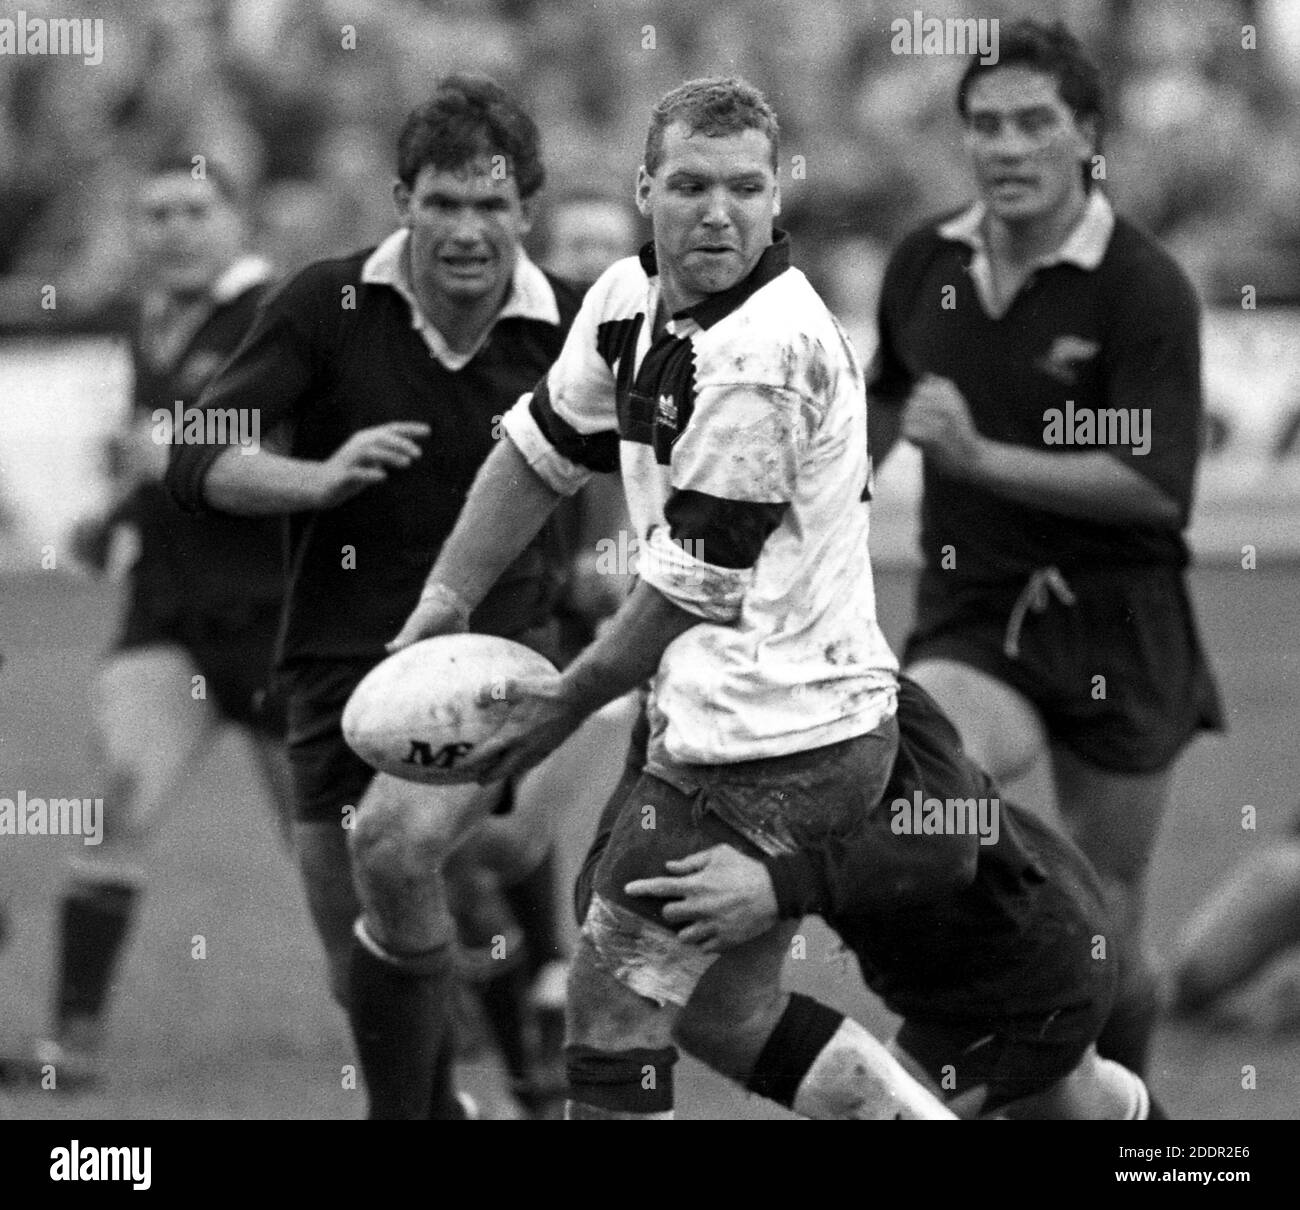 25. Oktober 1989 Rugby Union Neath gegen die All Blacks, die Gnoll, Neath, Wales. Matxch Action vor 12,000 Fans. Foto von Tony Henshaw Stockfoto